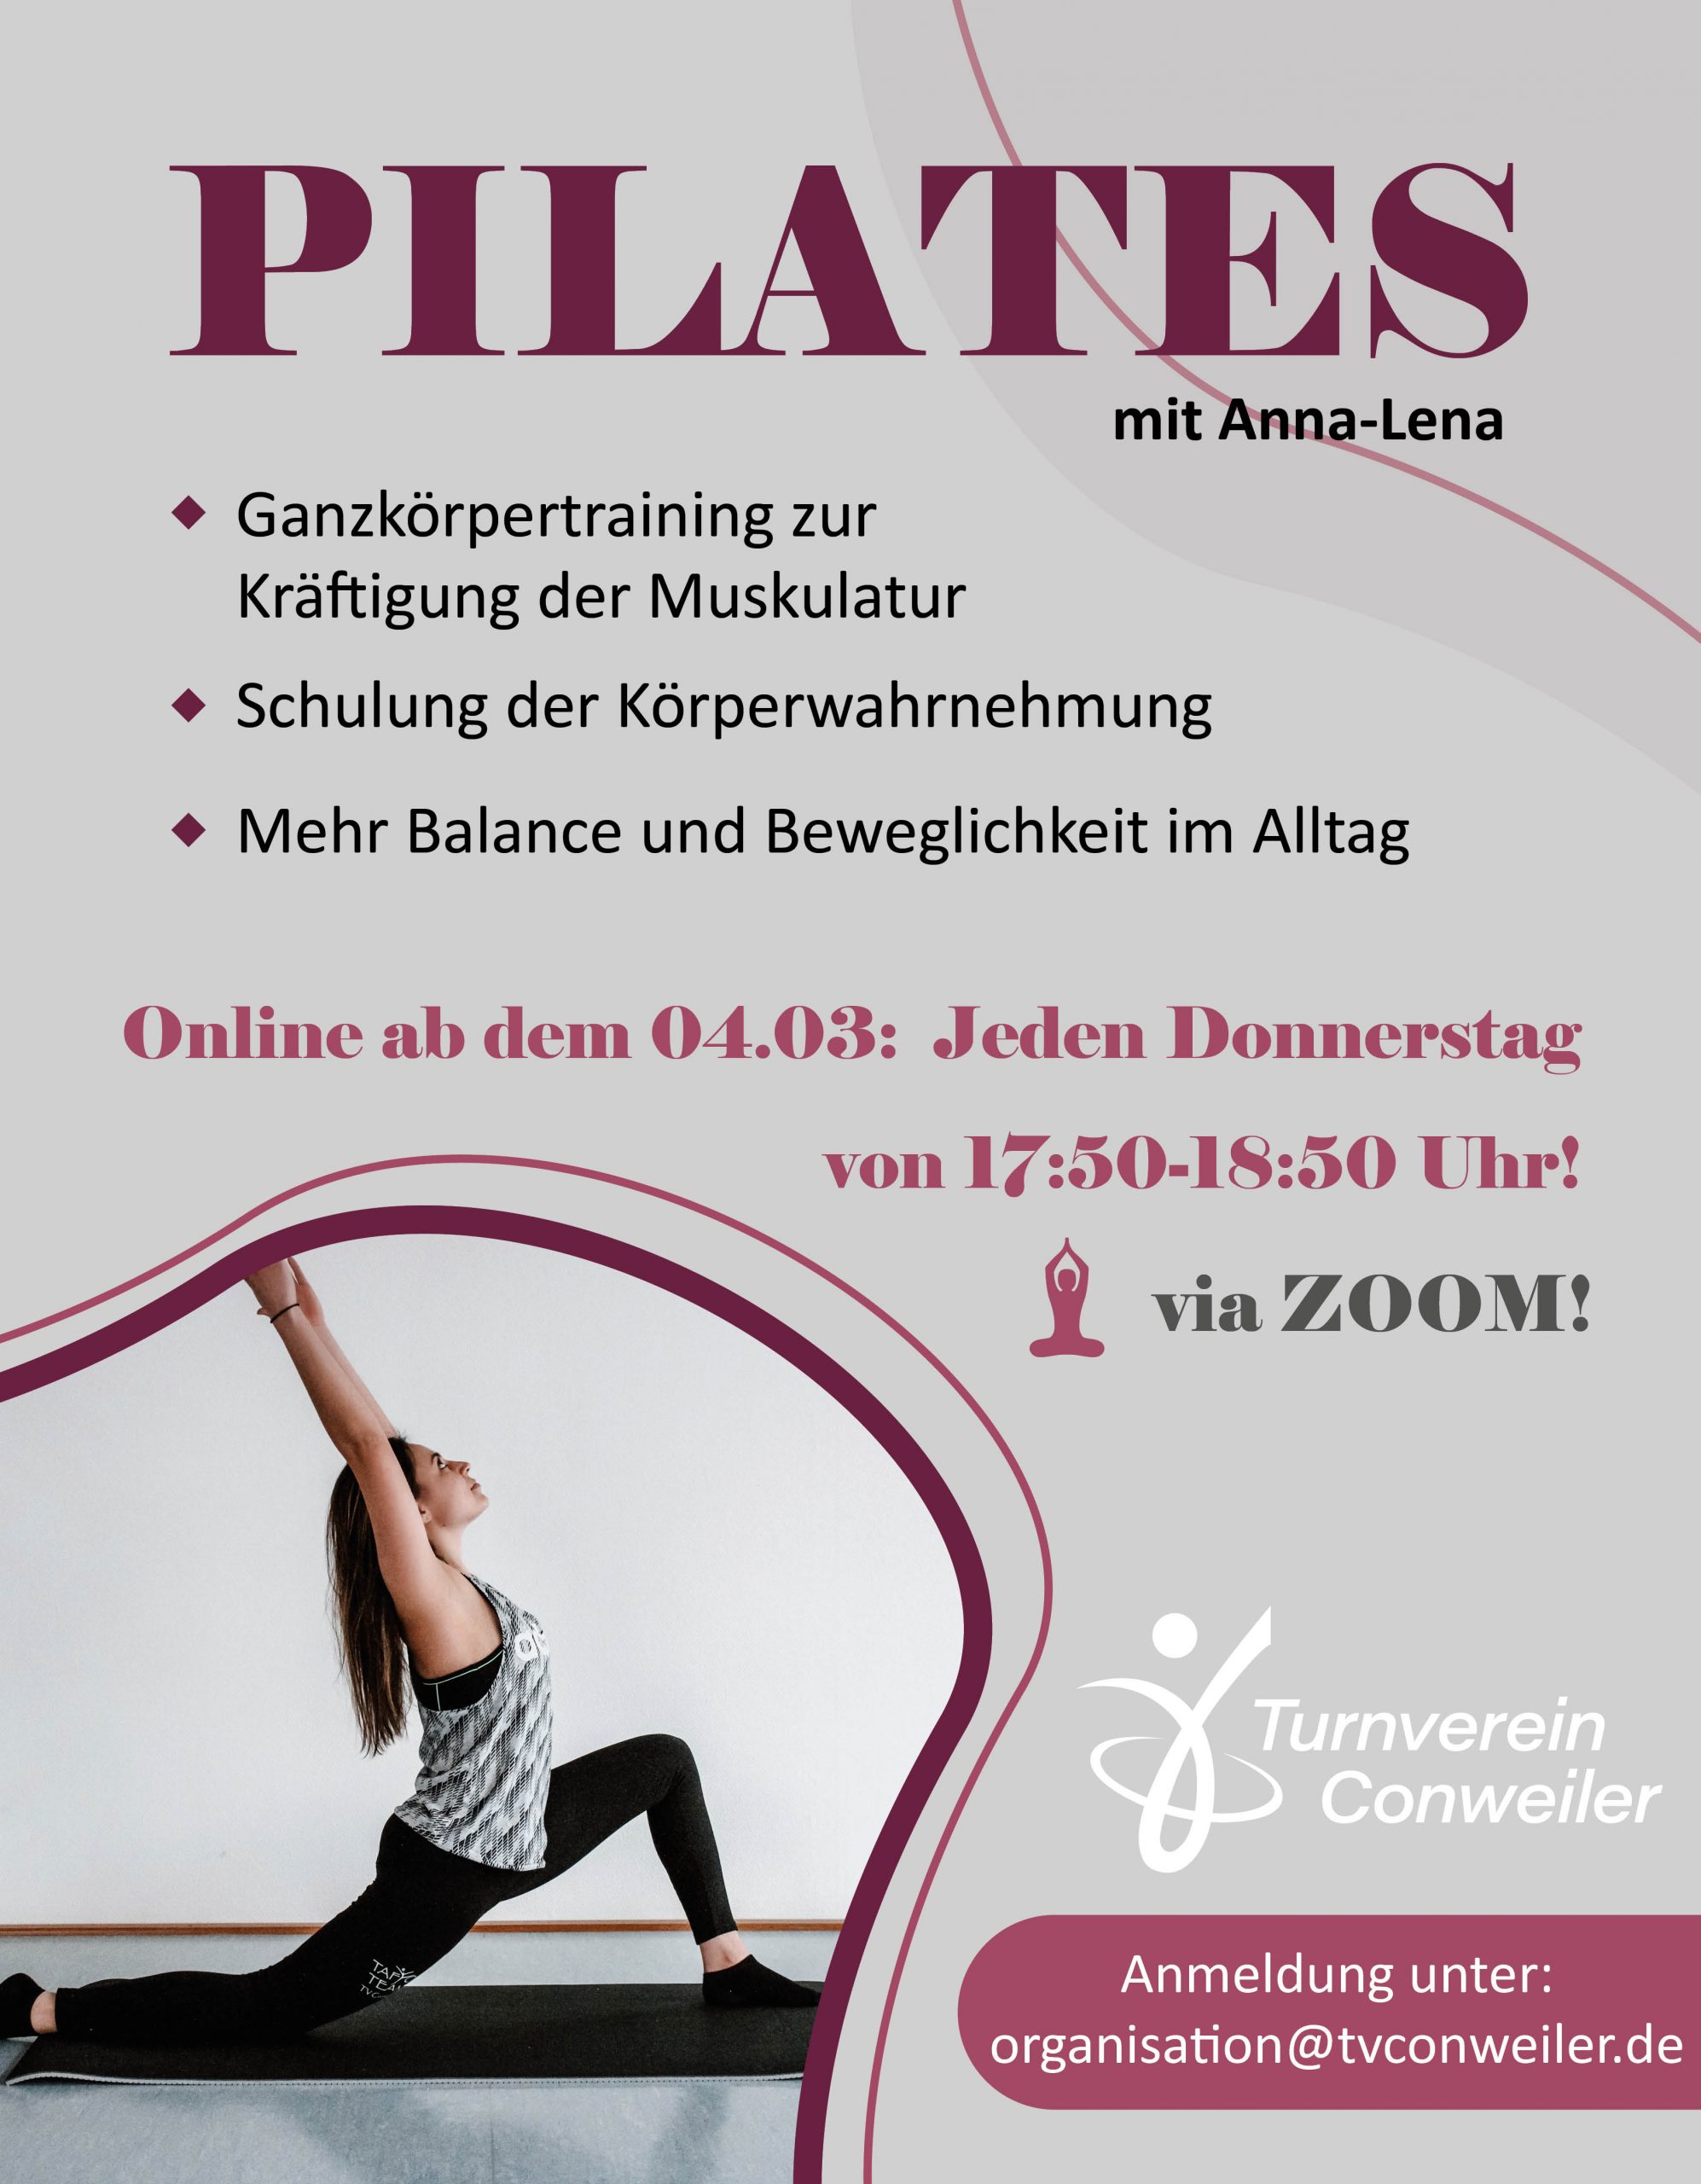 Neuer PILATES-Kurs mit Anna-Lena! Ab 04.03. Online! - Turnverein